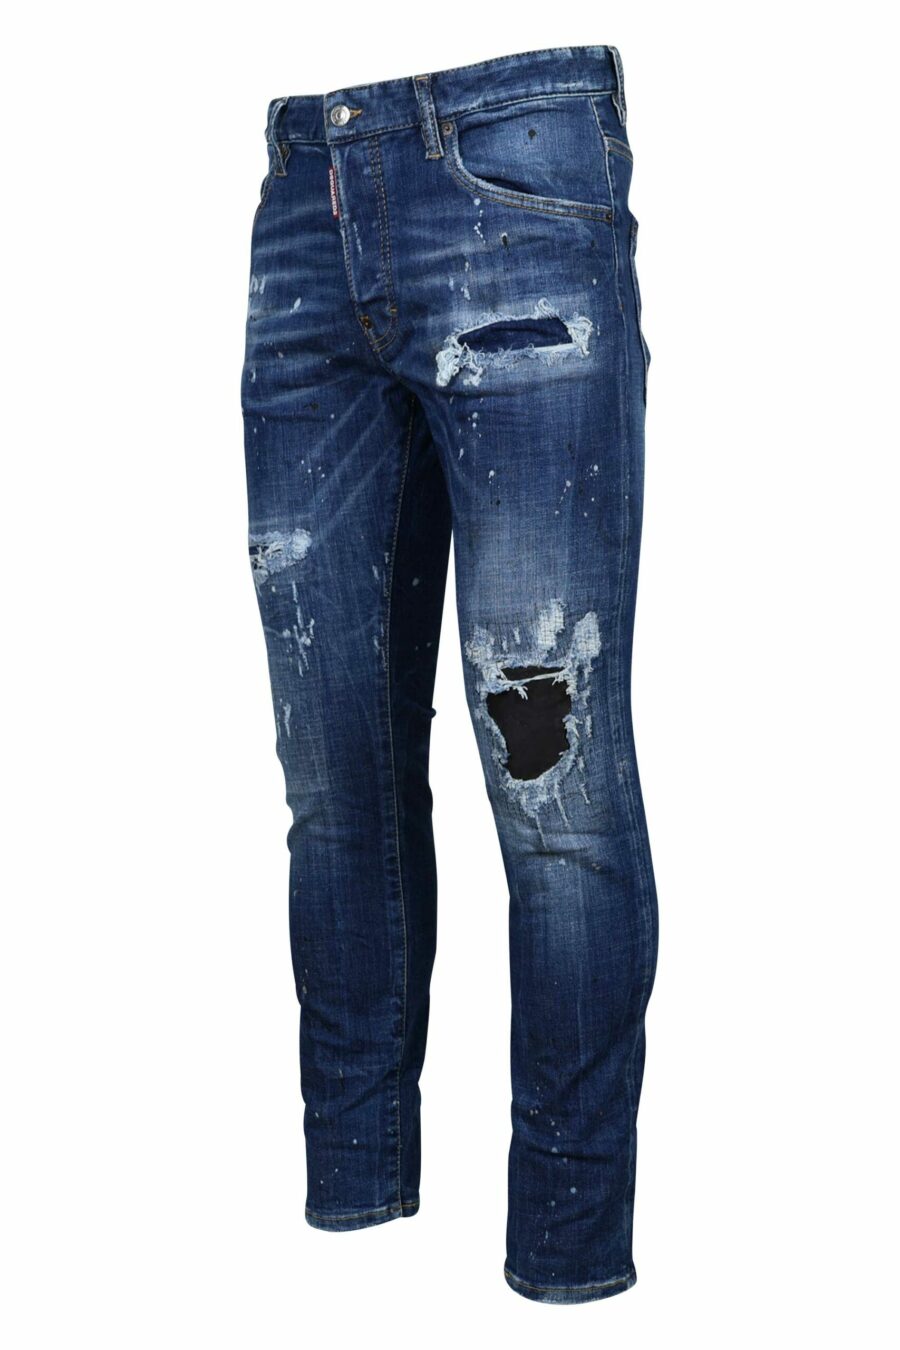 Pantalón vaquero "skater jean" azul con rotos y desgastado - 8054148124687 1 1 scaled